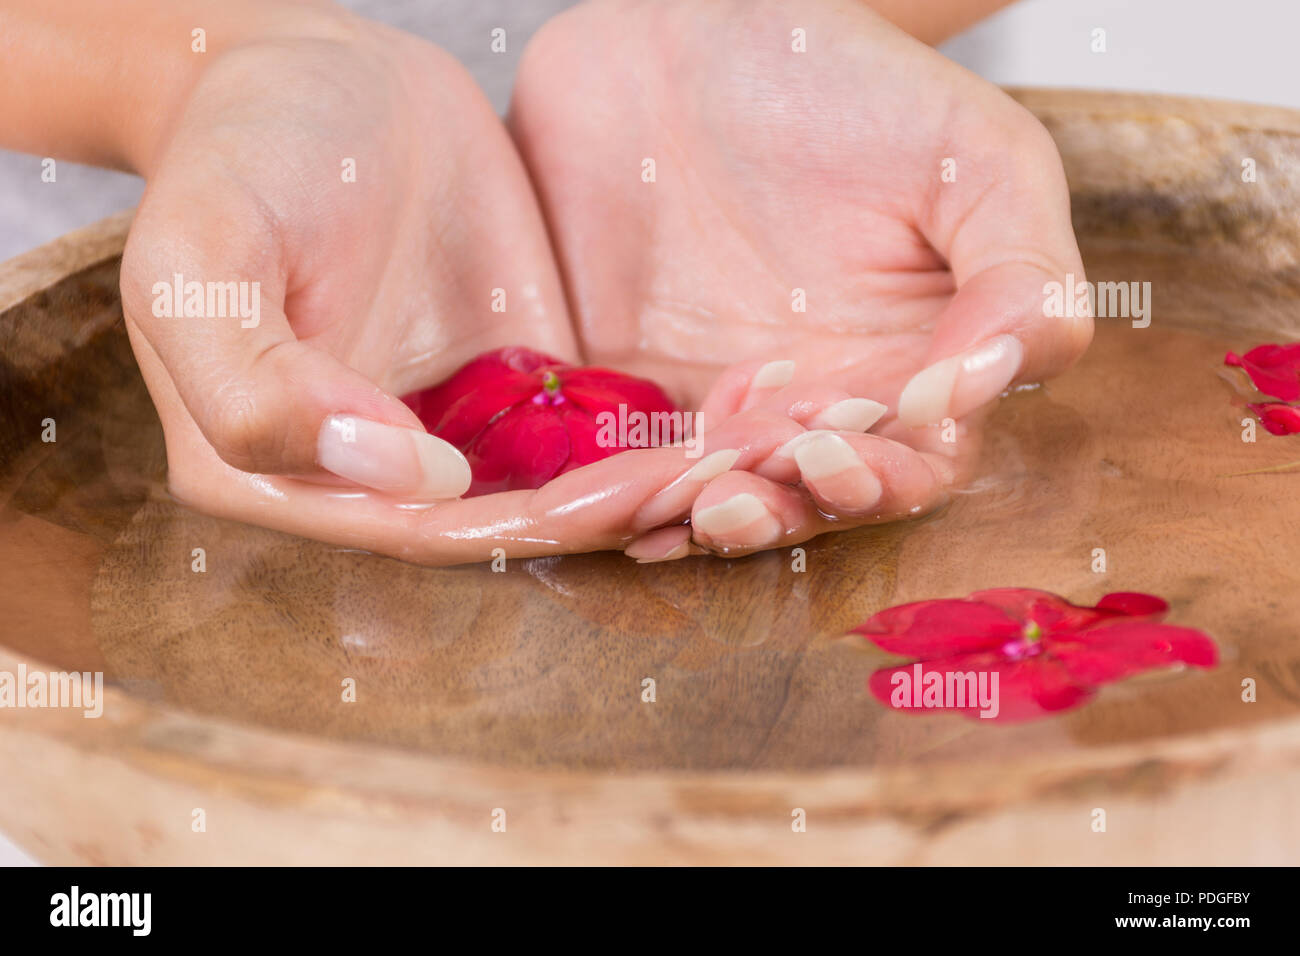 Giovane ragazza mano nella ciotola di legno con acqua e fiore rosso, manicure naturale sulle unghie. Trattamento Spa per mani concetto. Close up, il fuoco selettivo Foto Stock